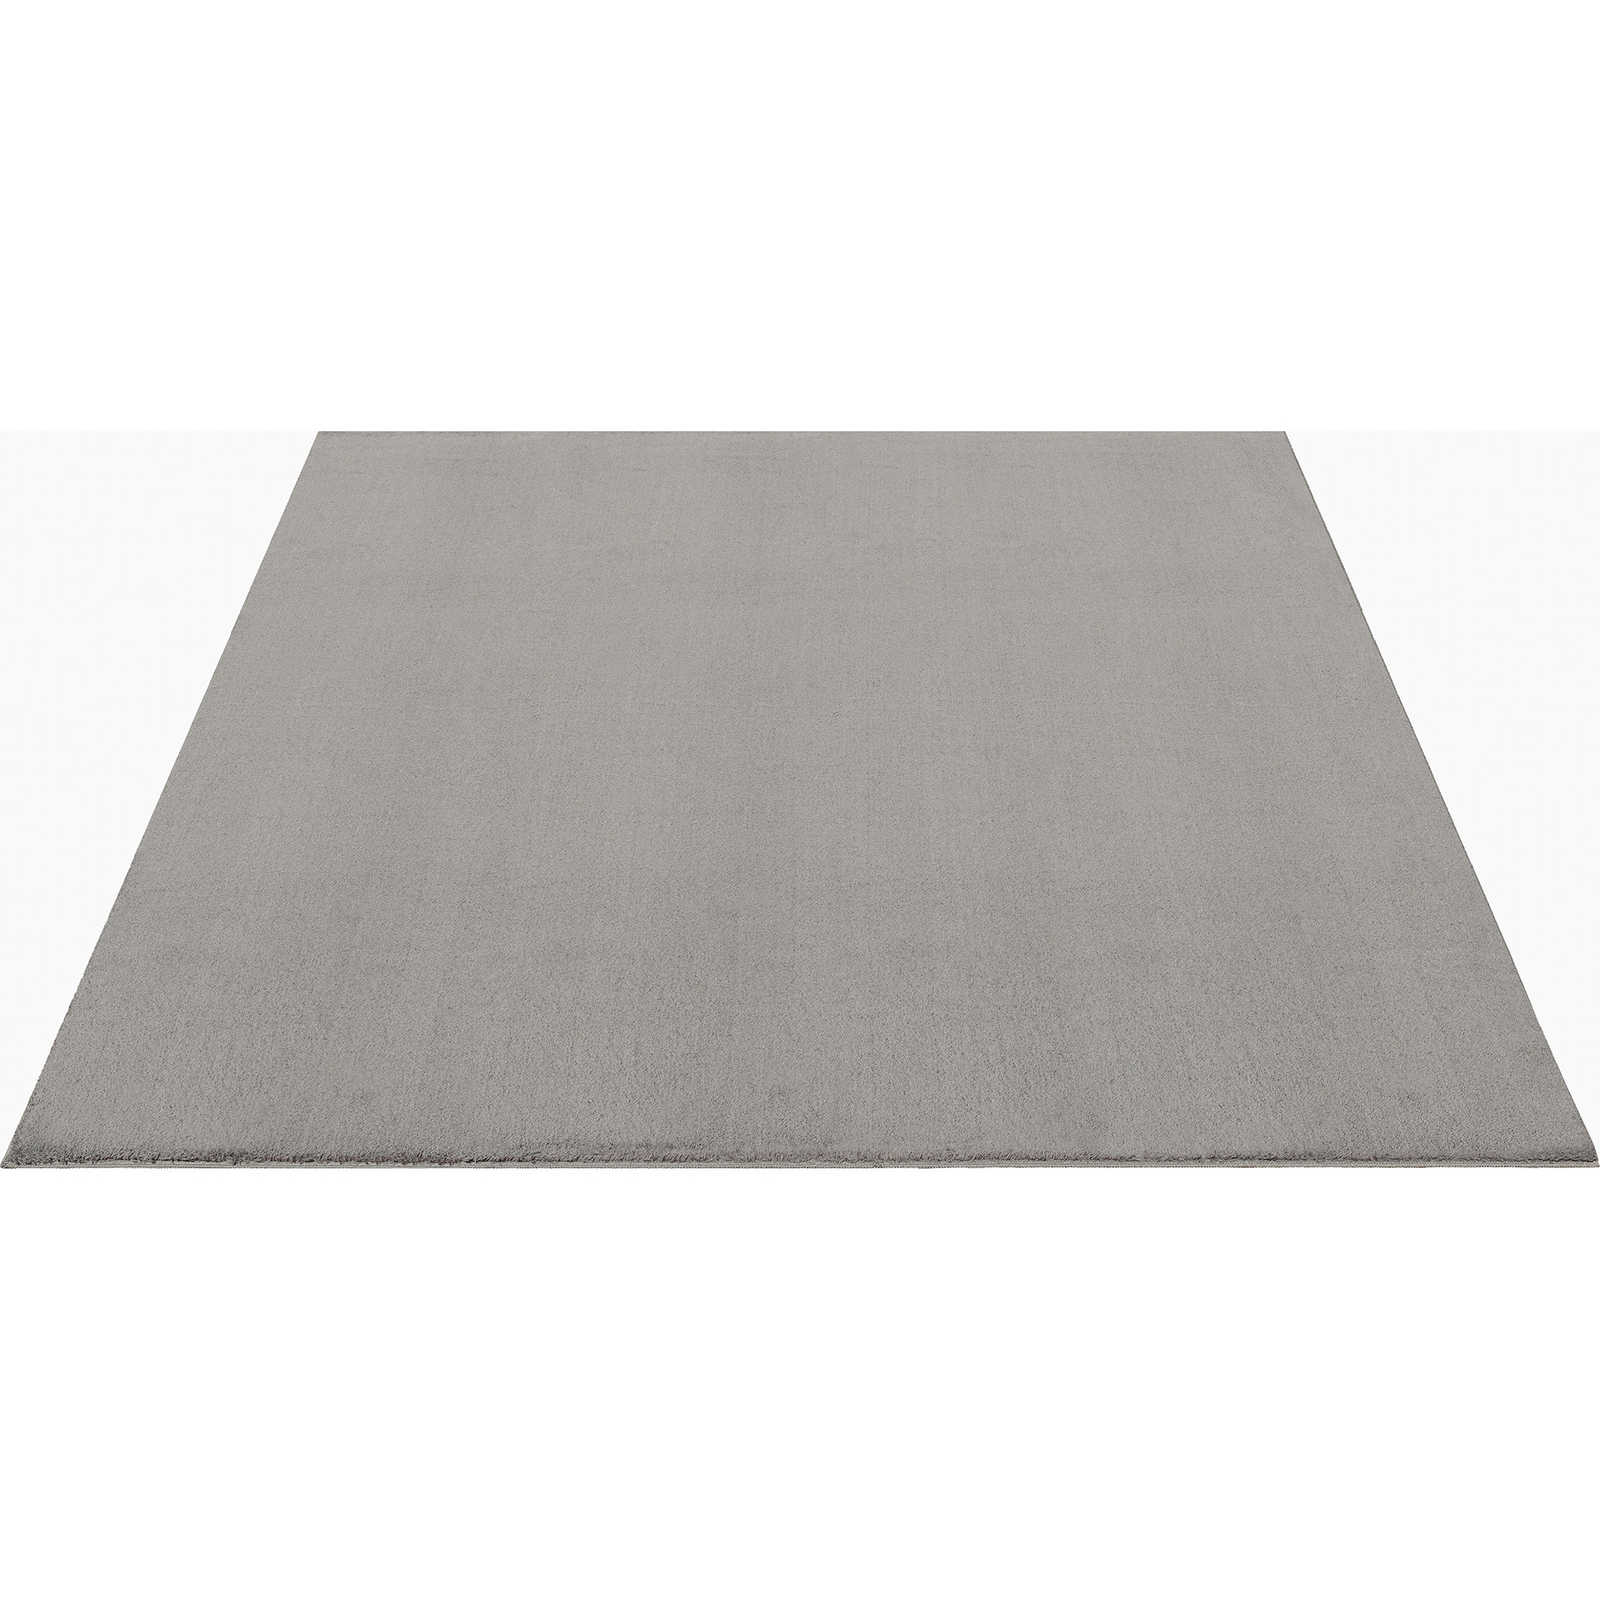 Modischer Hochflor Teppich in Sand – 340 x 240 cm
